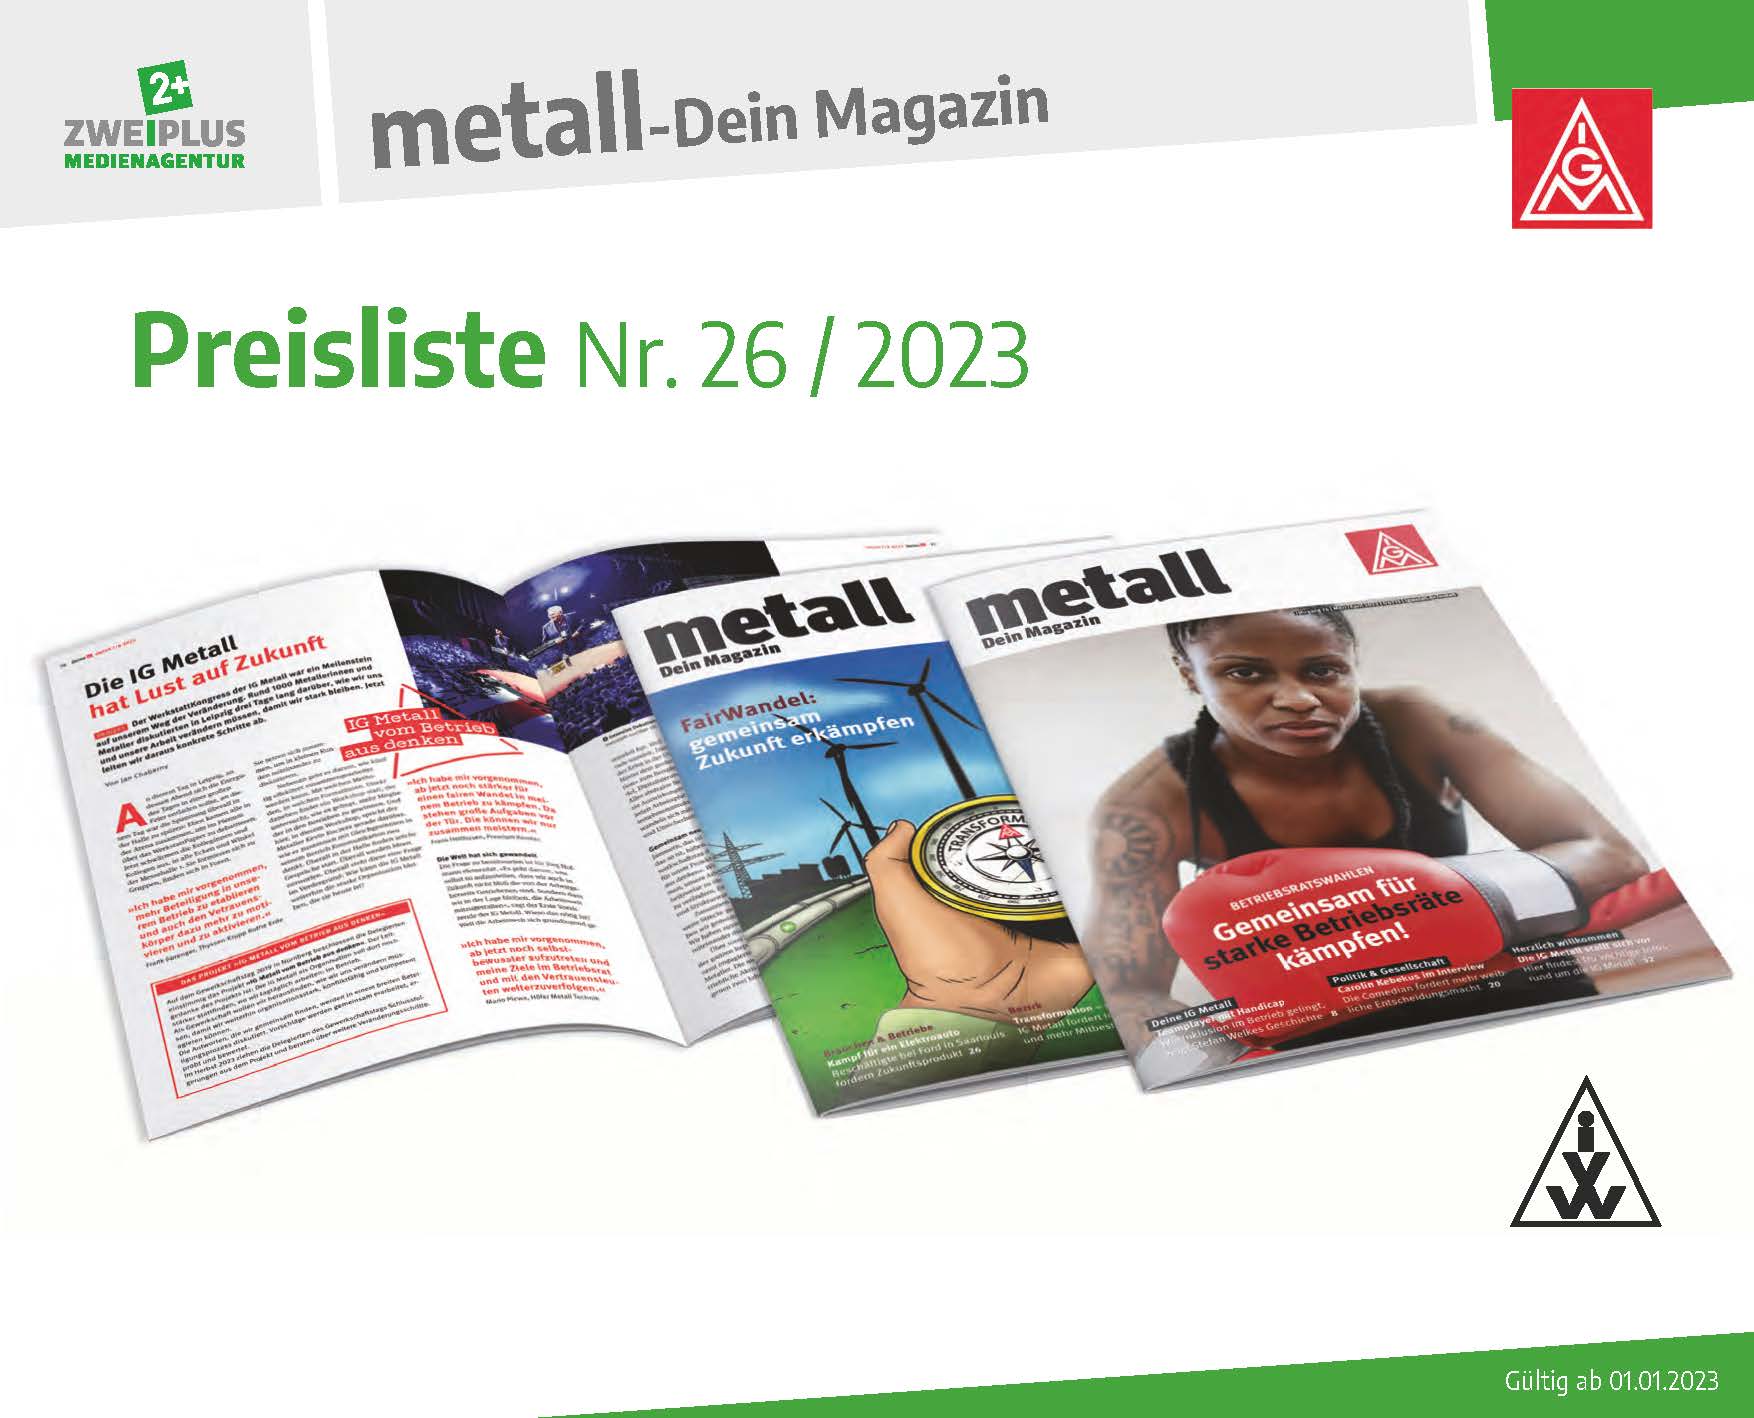 metall - Dein Magazin, Mediadaten 2023, Zweiplus Medienagentur, IGMetall